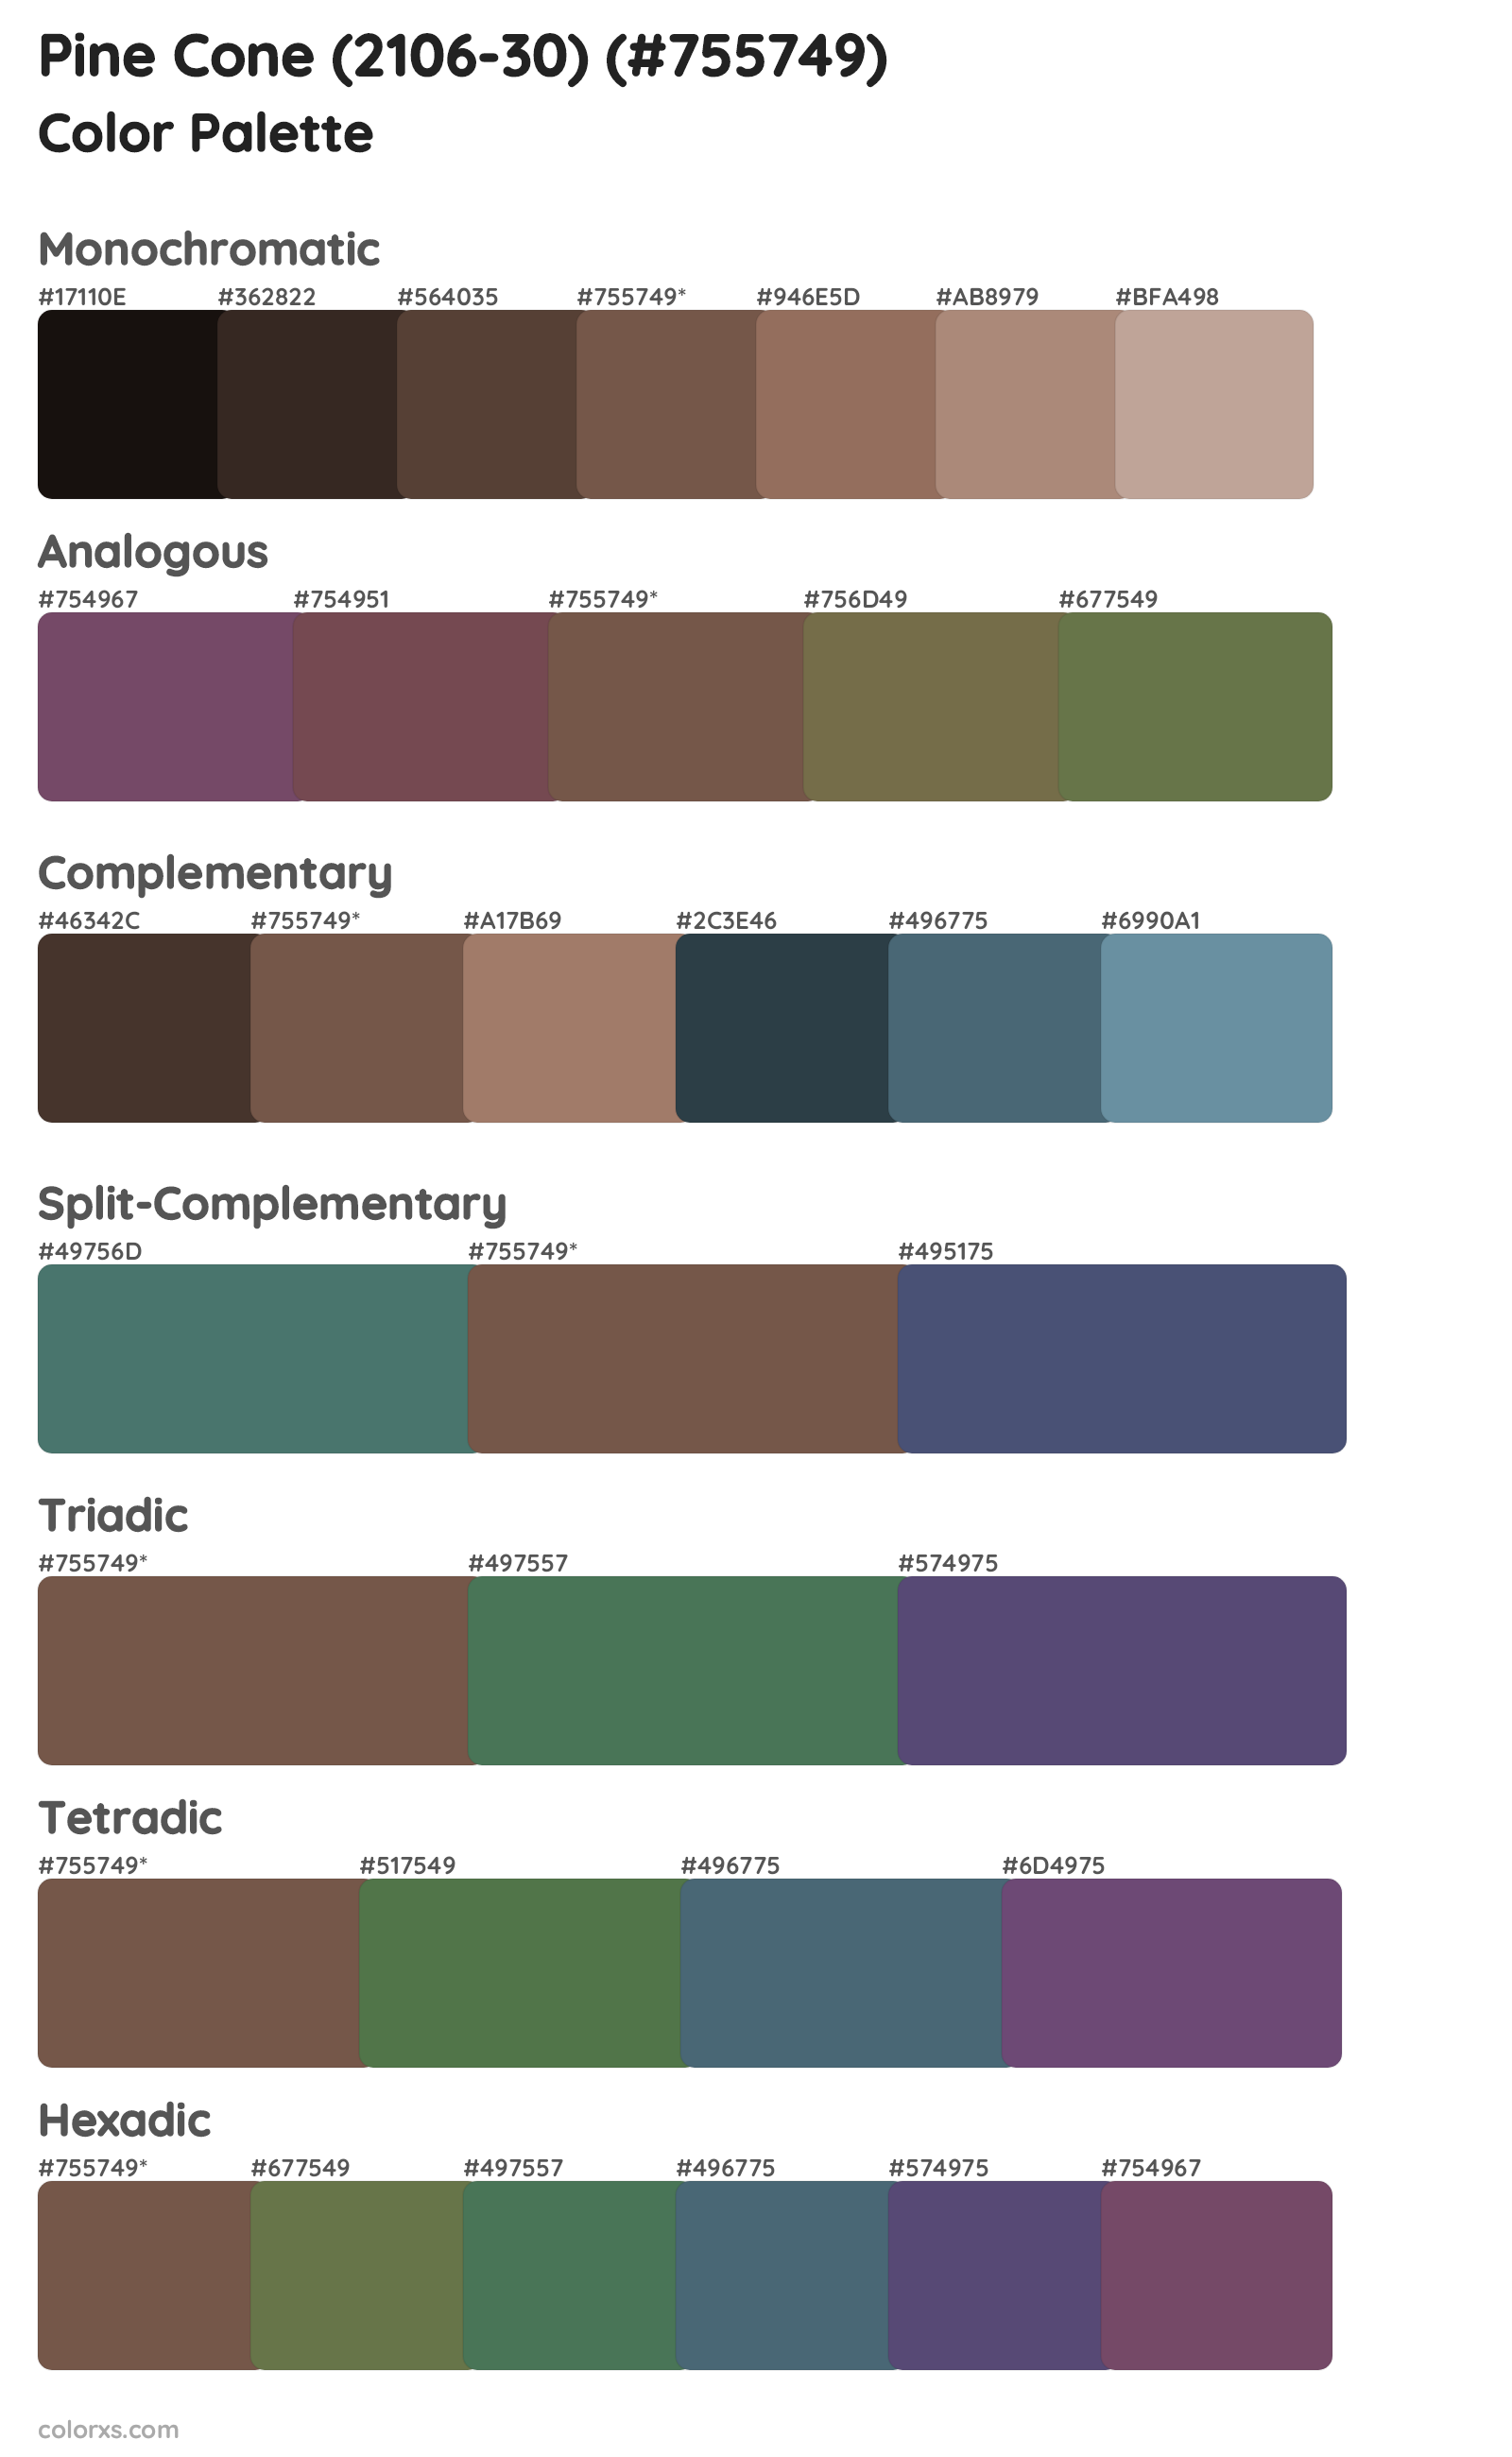 Pine Cone (2106-30) Color Scheme Palettes